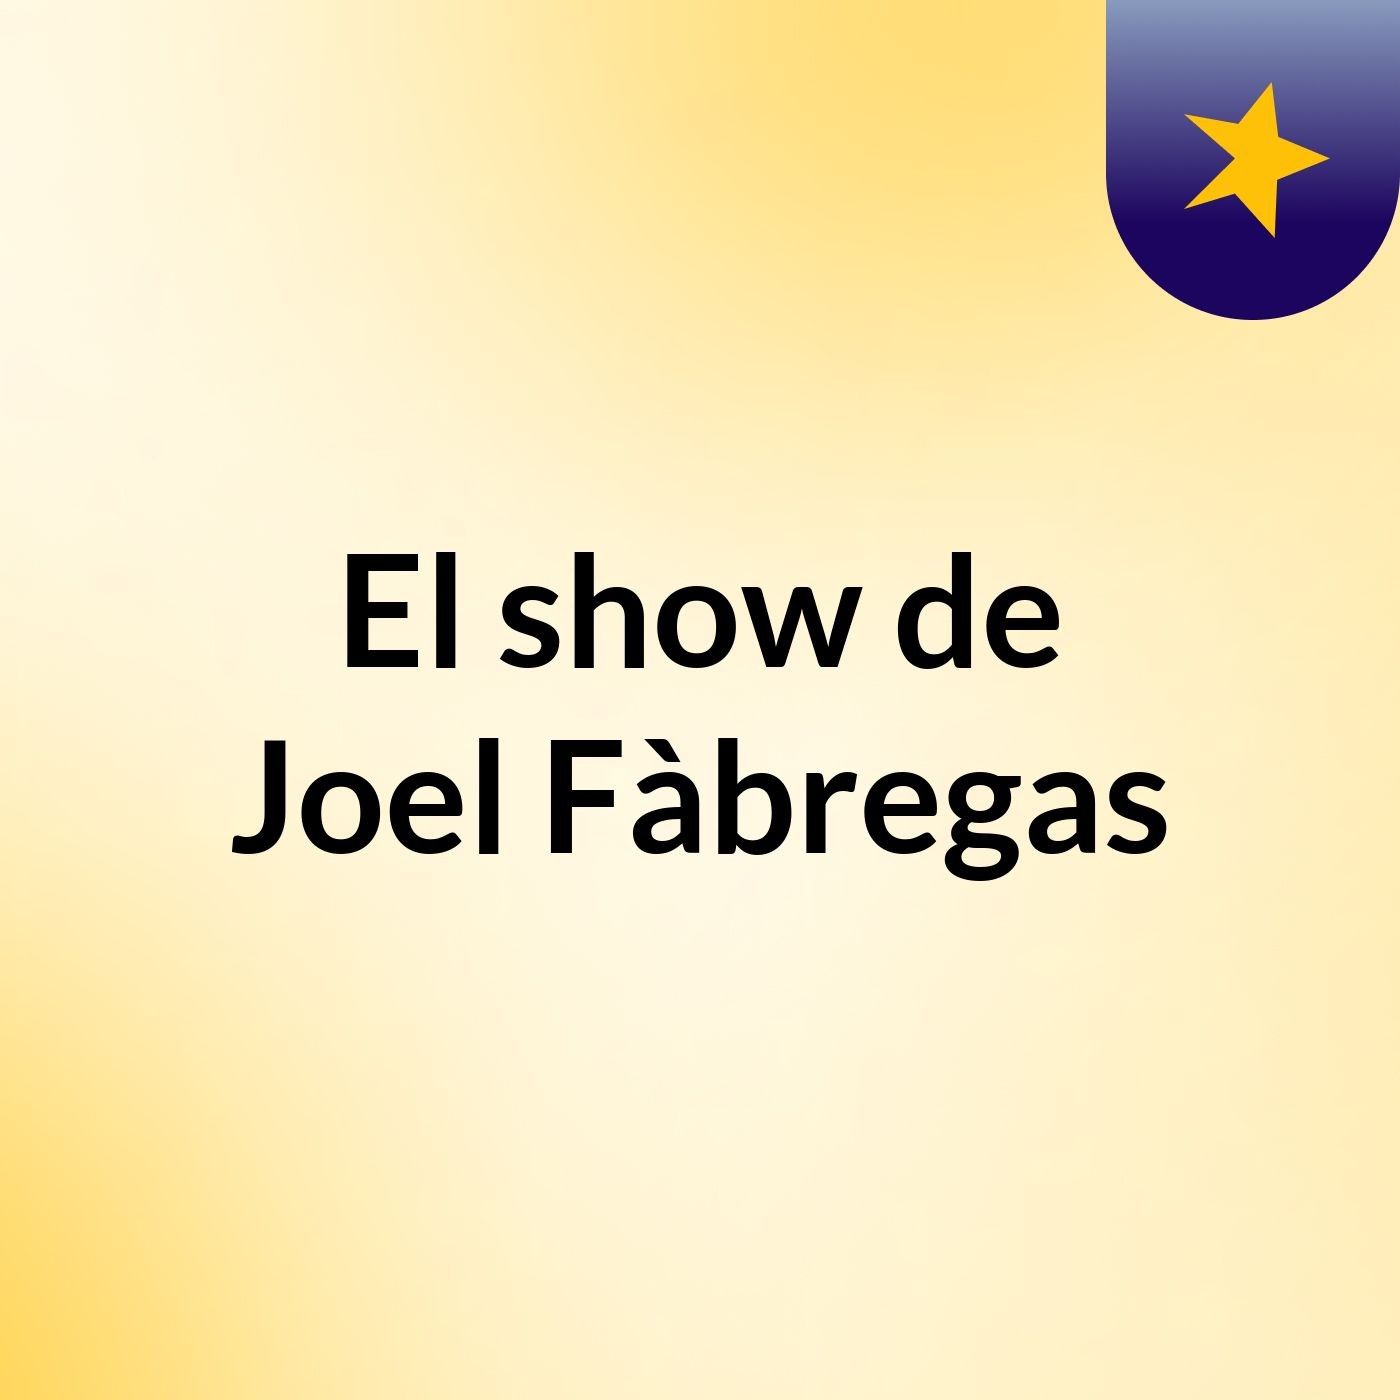 El show de Joel Fàbregas